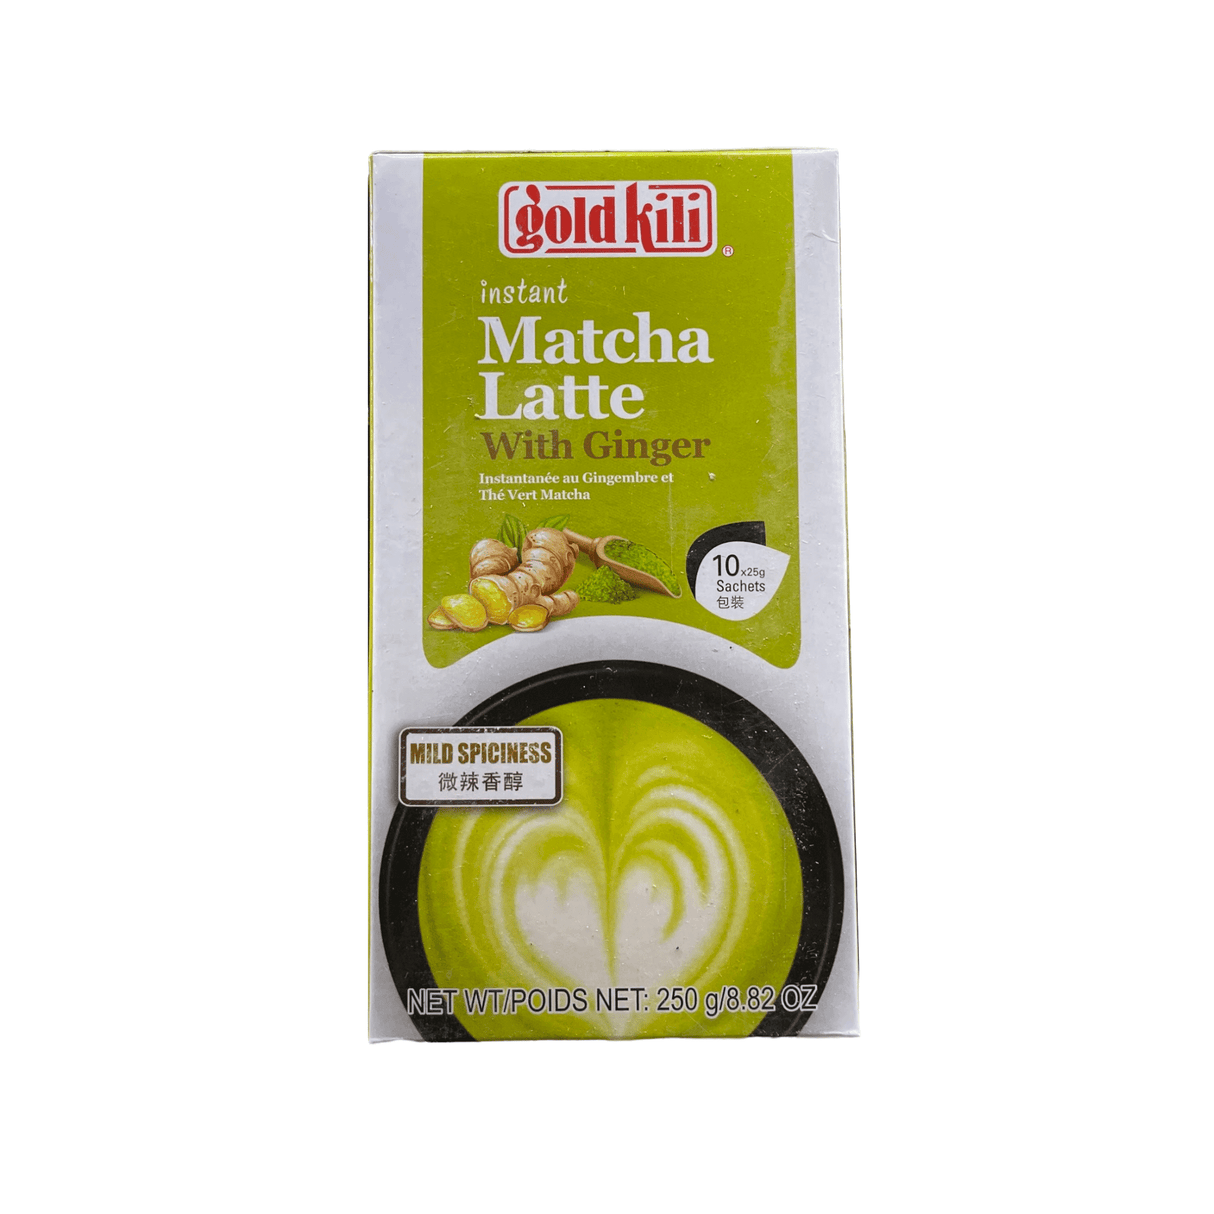 Gold Kili Instant Matcha Latte with Ginger Mild Spiciness